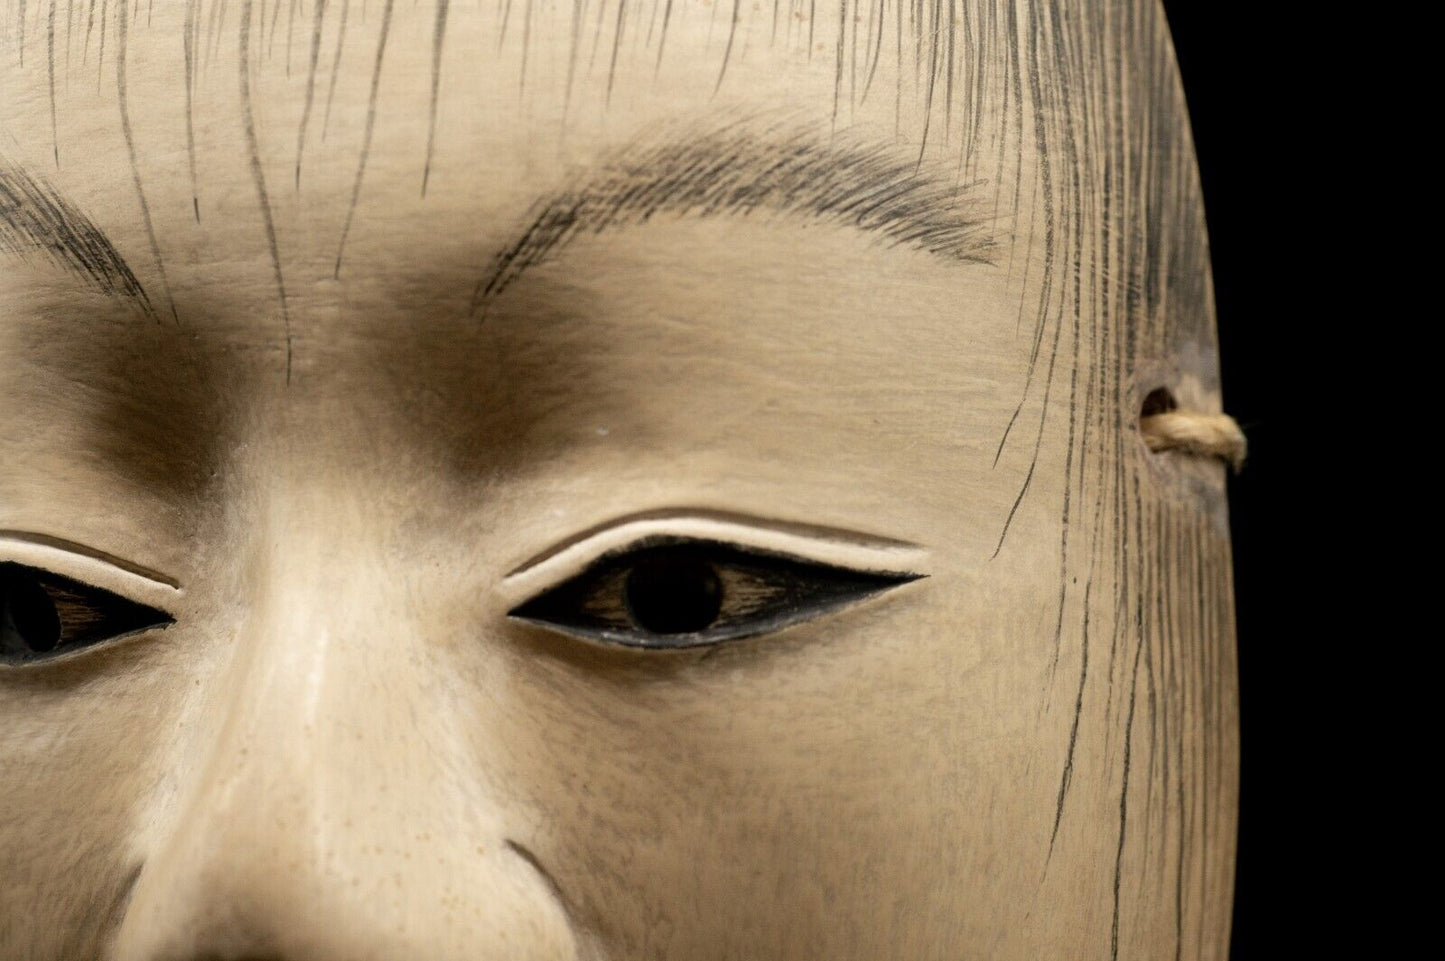 Wooden Noh Mask Doji 童子 Noh Men Japanese Vintage/Antique